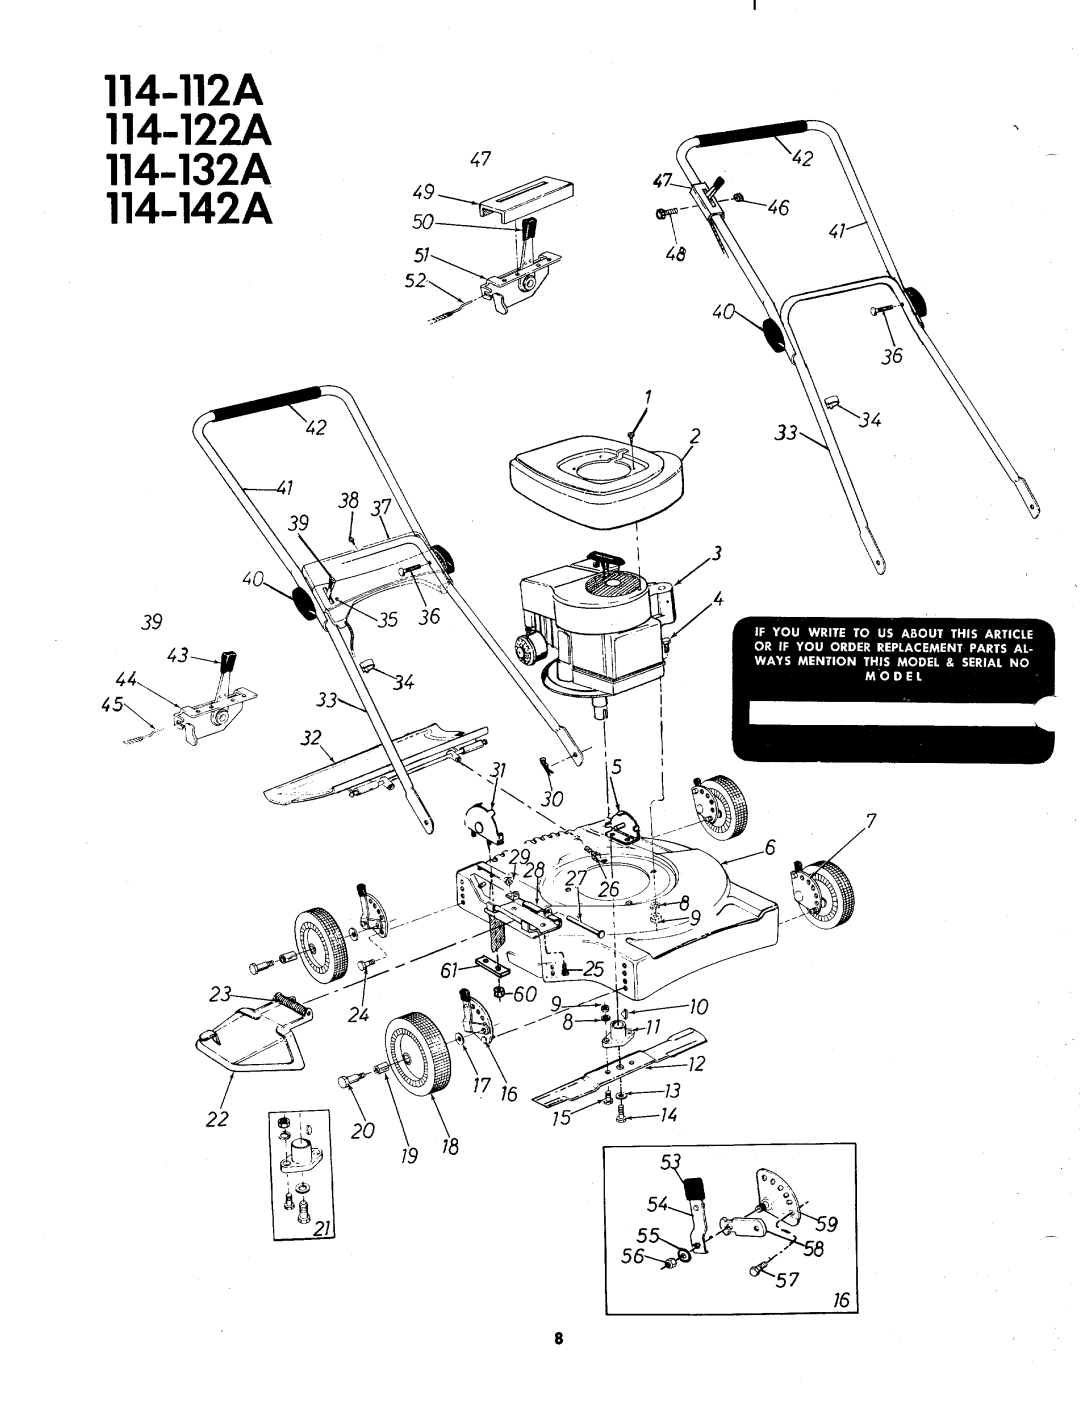 MTD 114-132A, 114-122A, 114-112A, 114-142AA manual 